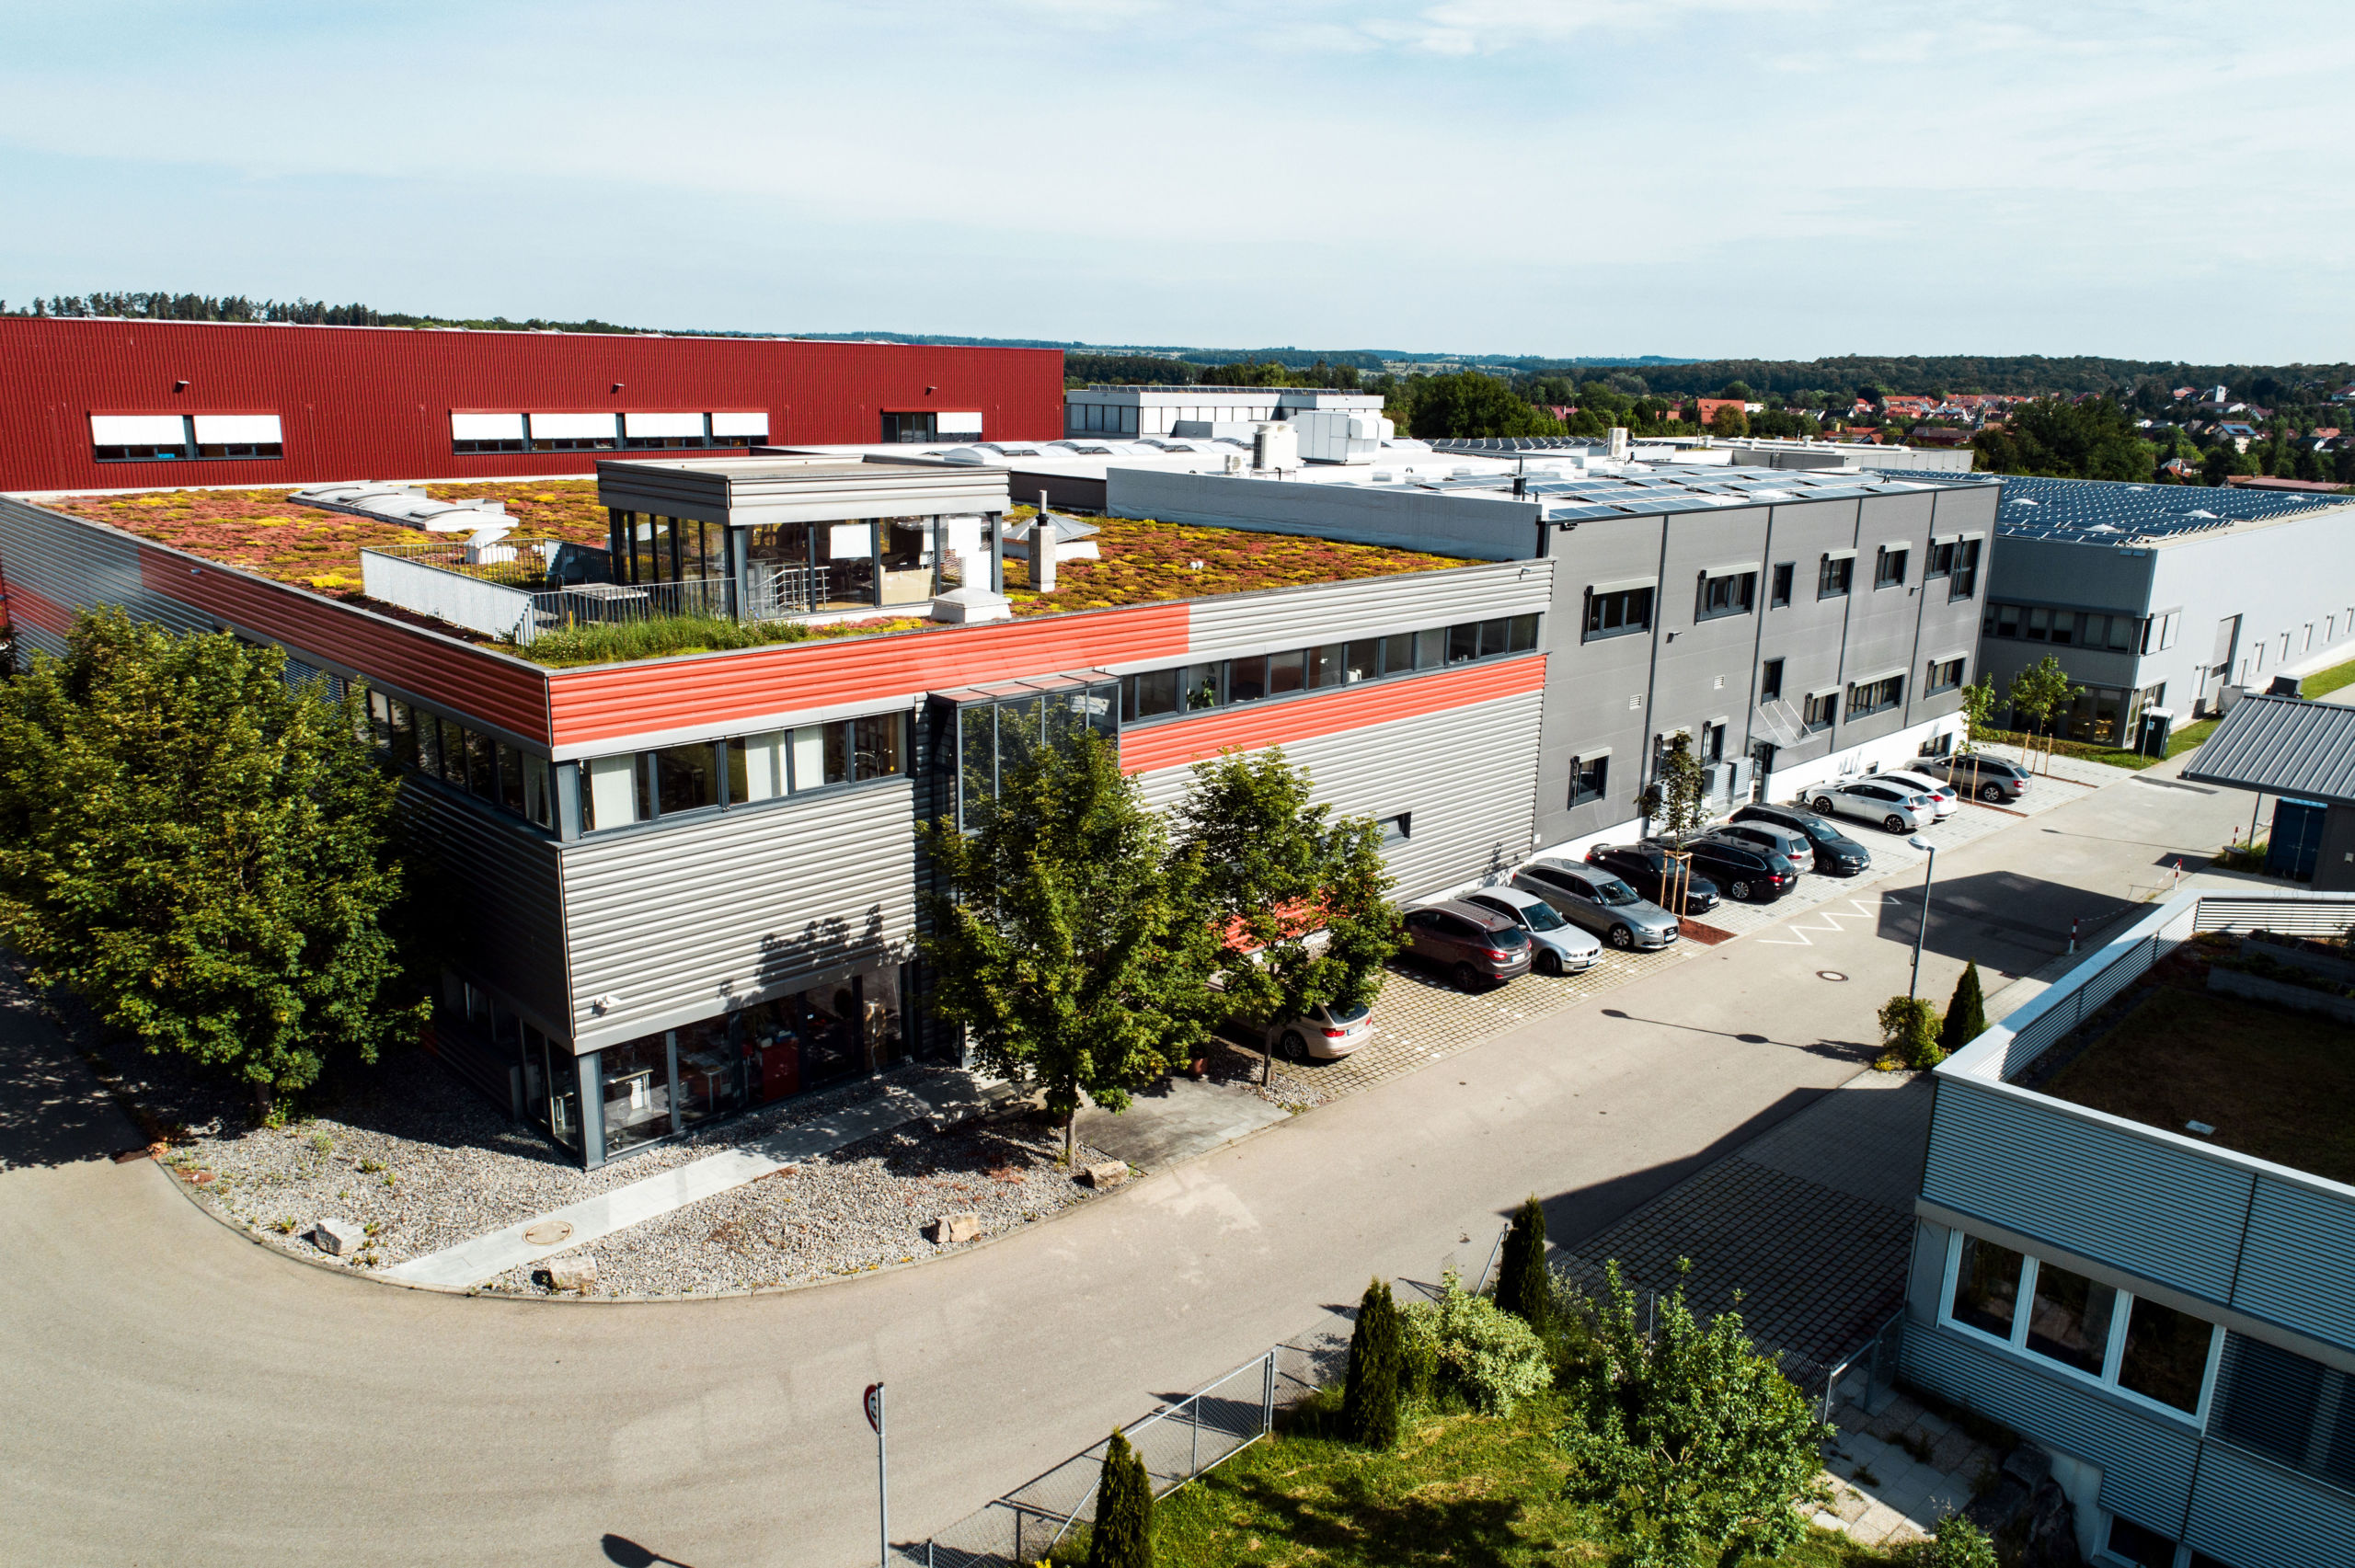 SF-Bau-Industriebau-Erweiterung Halle mit Büro-Jebenhausen-Stahlbau-Schlüsselfertigbau